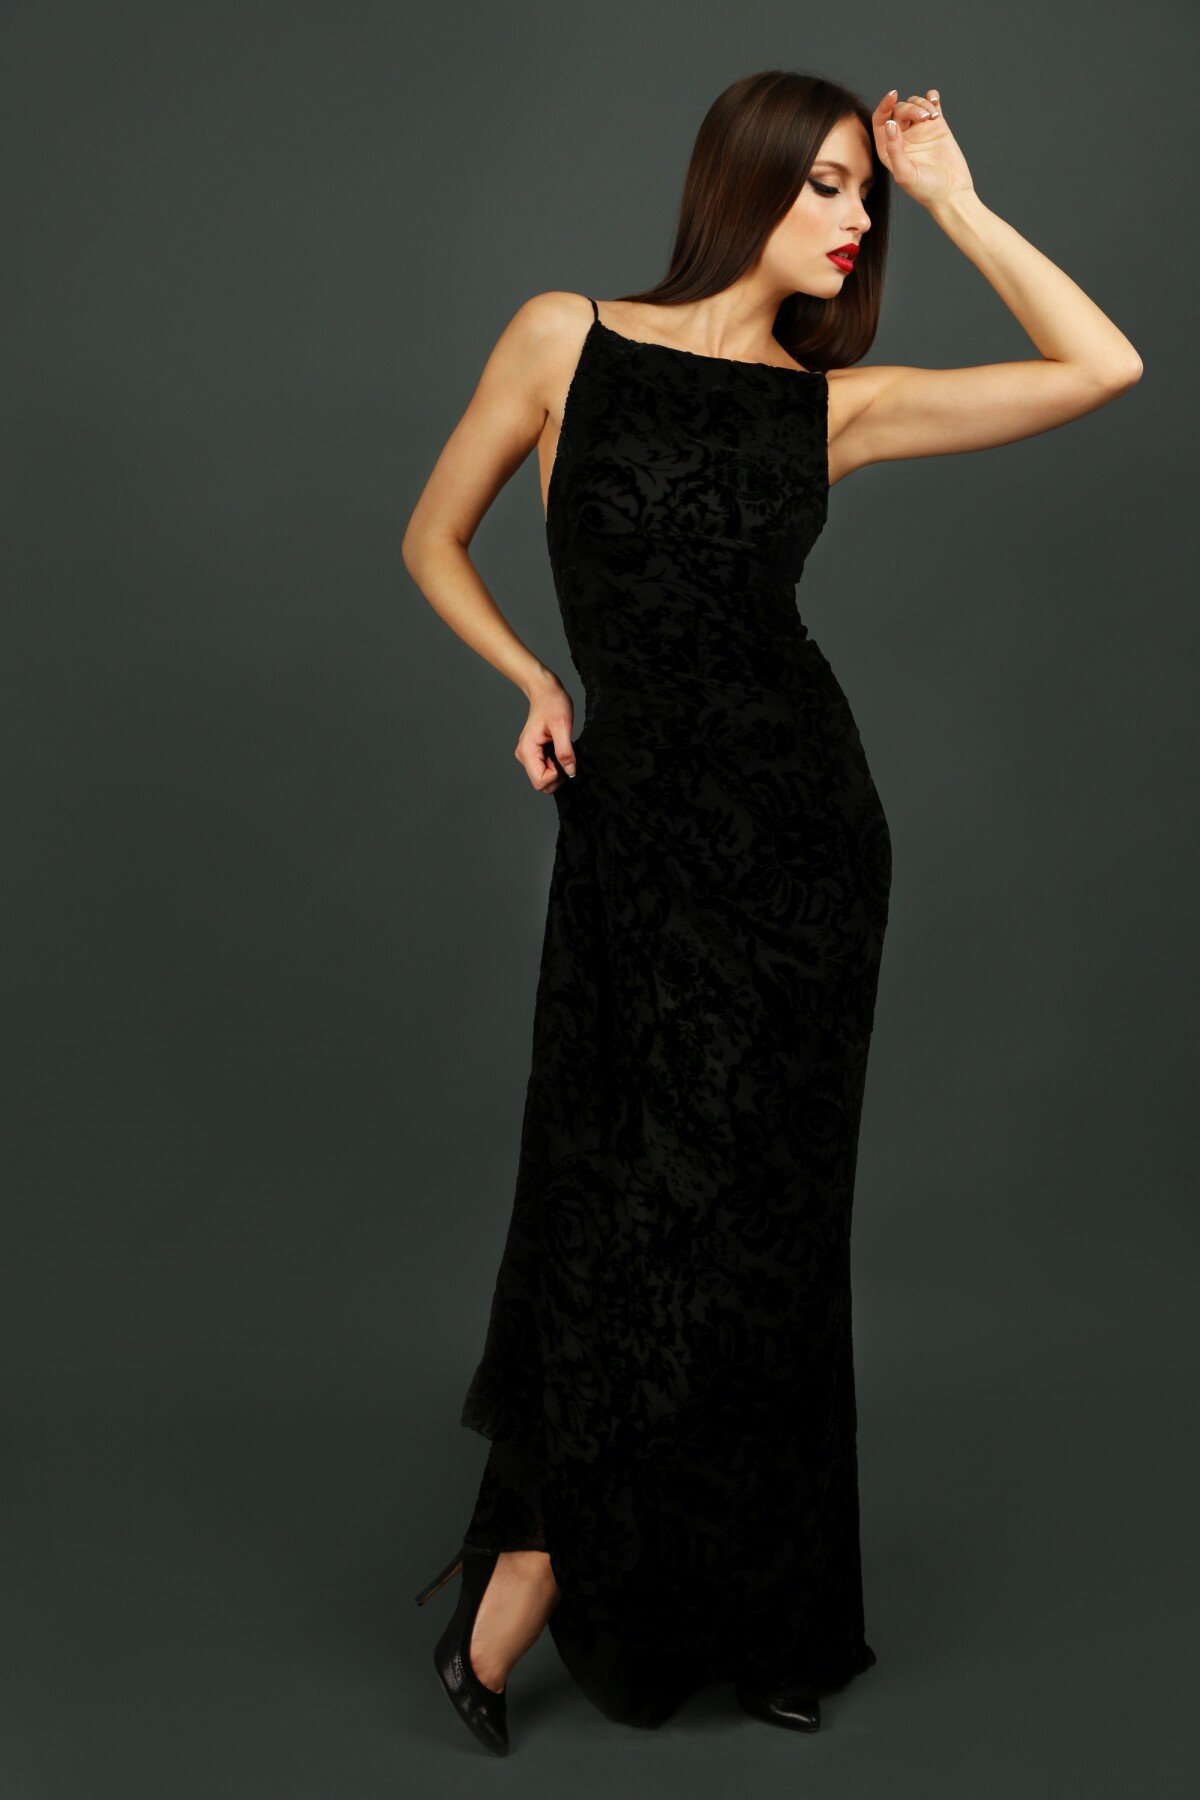 Foto: Vestido preto: modelo longo é elegante e indicado para